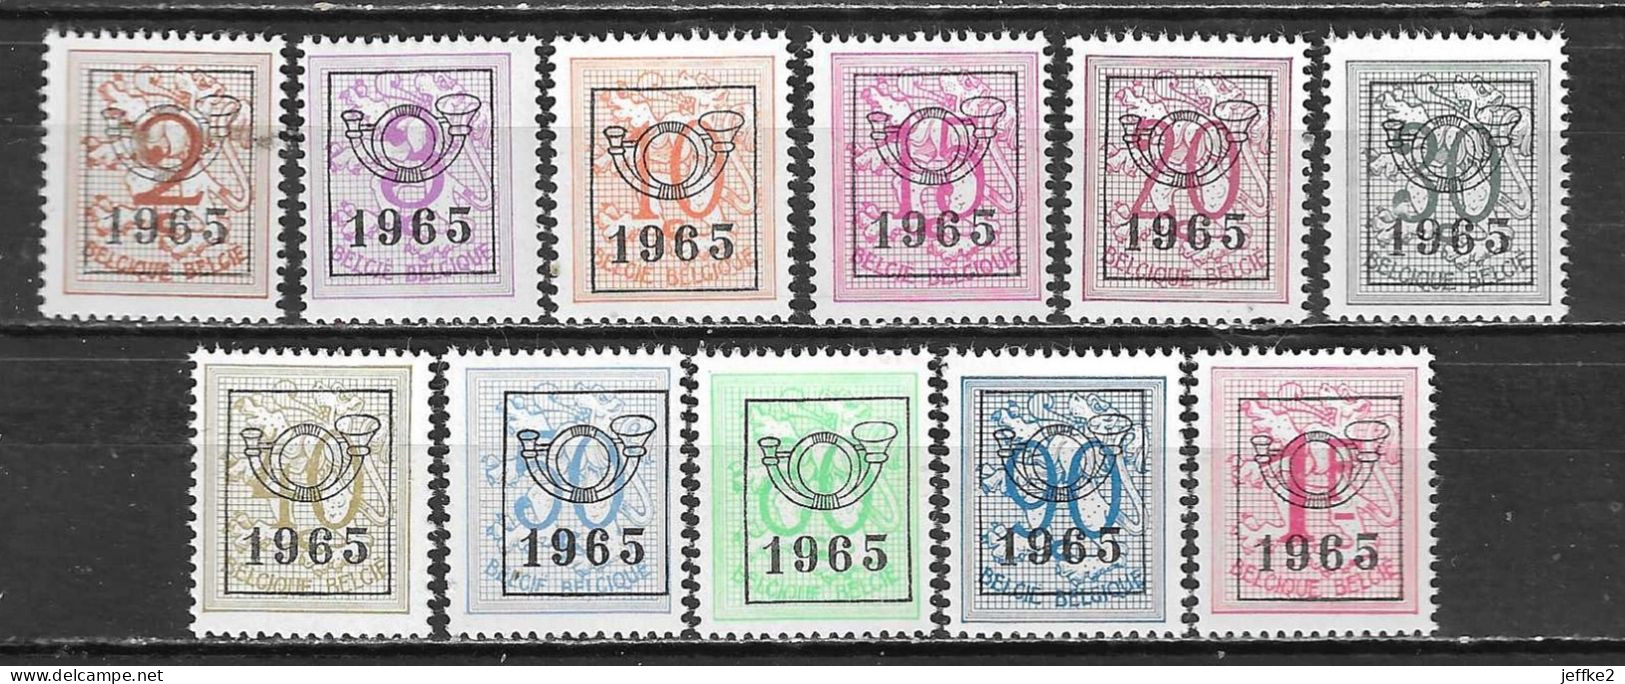 PRE758/68**  Chiffre Sur Lion - Année 1965 - Série Complète - MNH** - LOOK!!!! - Typografisch 1951-80 (Cijfer Op Leeuw)